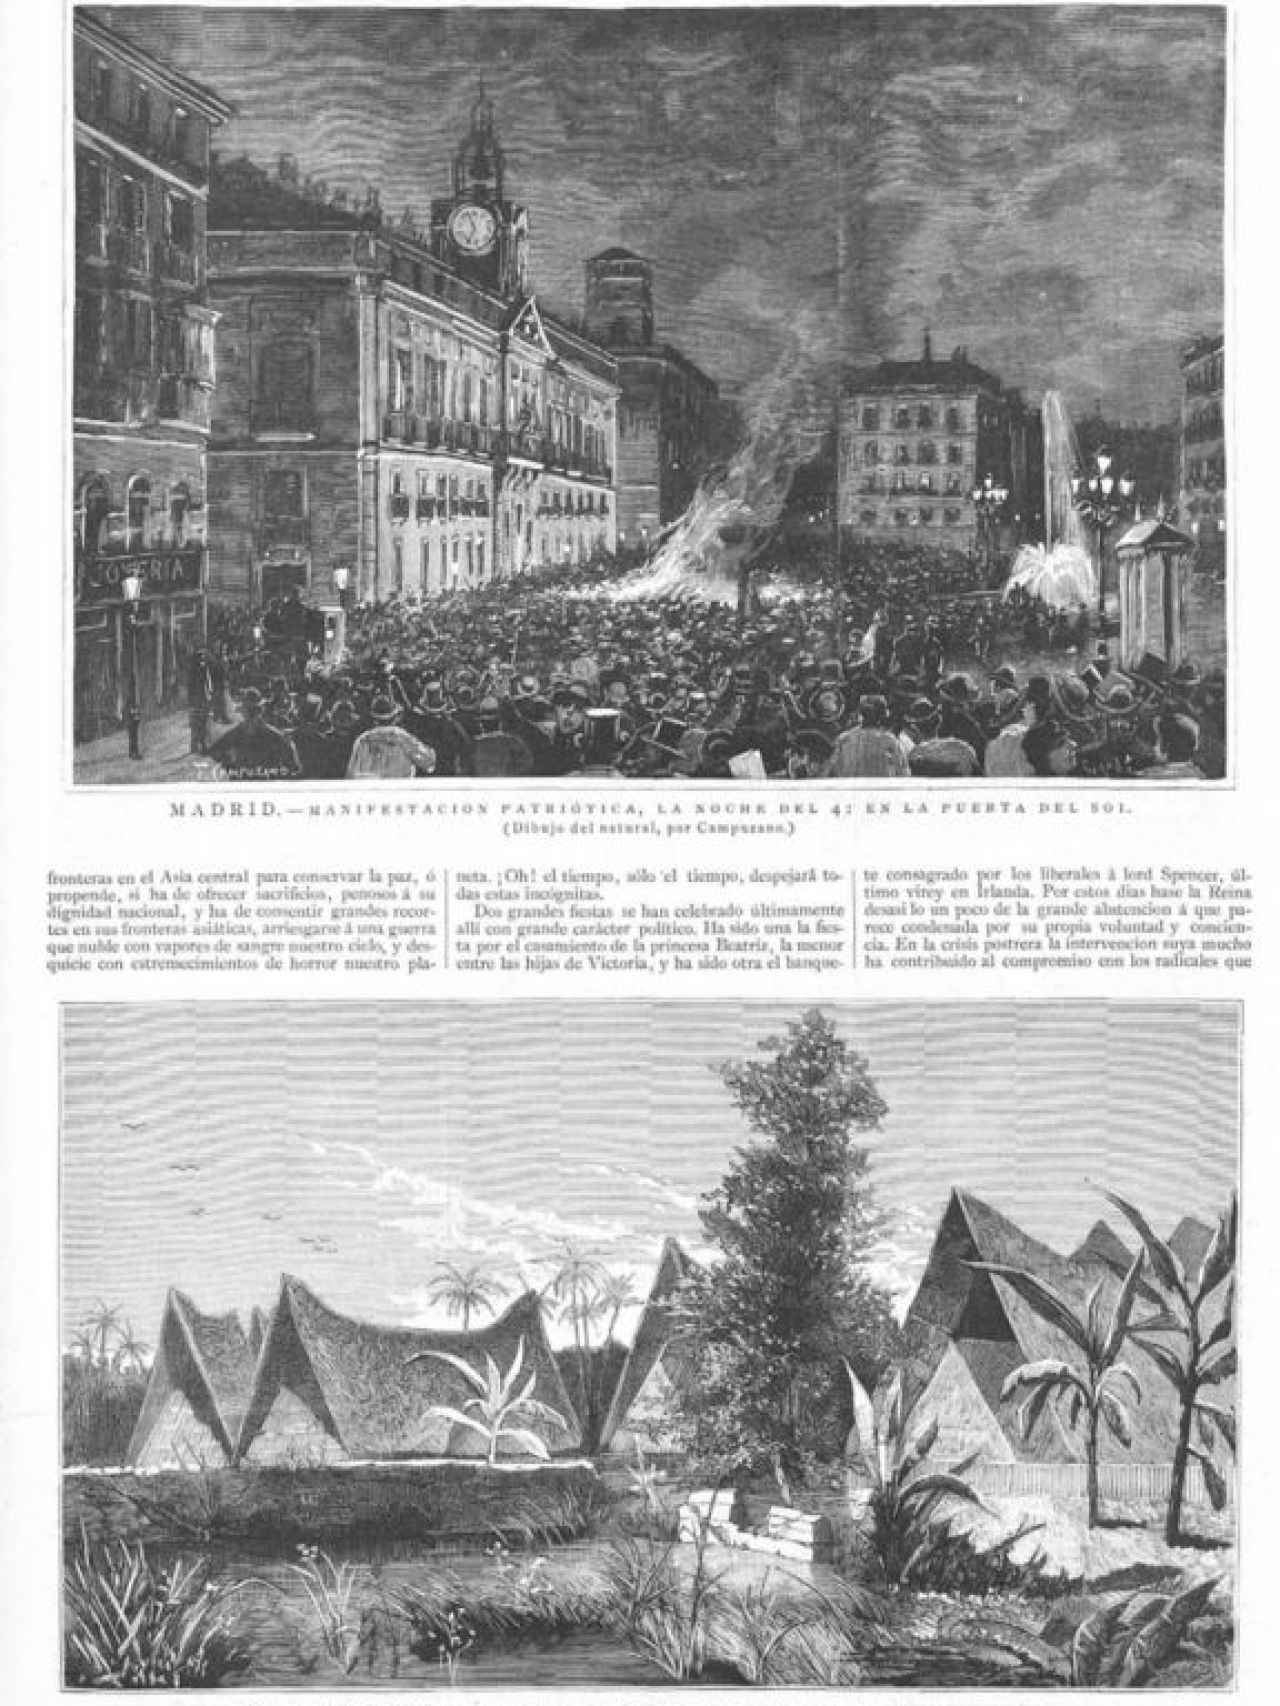 La Ilustración Española y Americana. 15-9-1885.